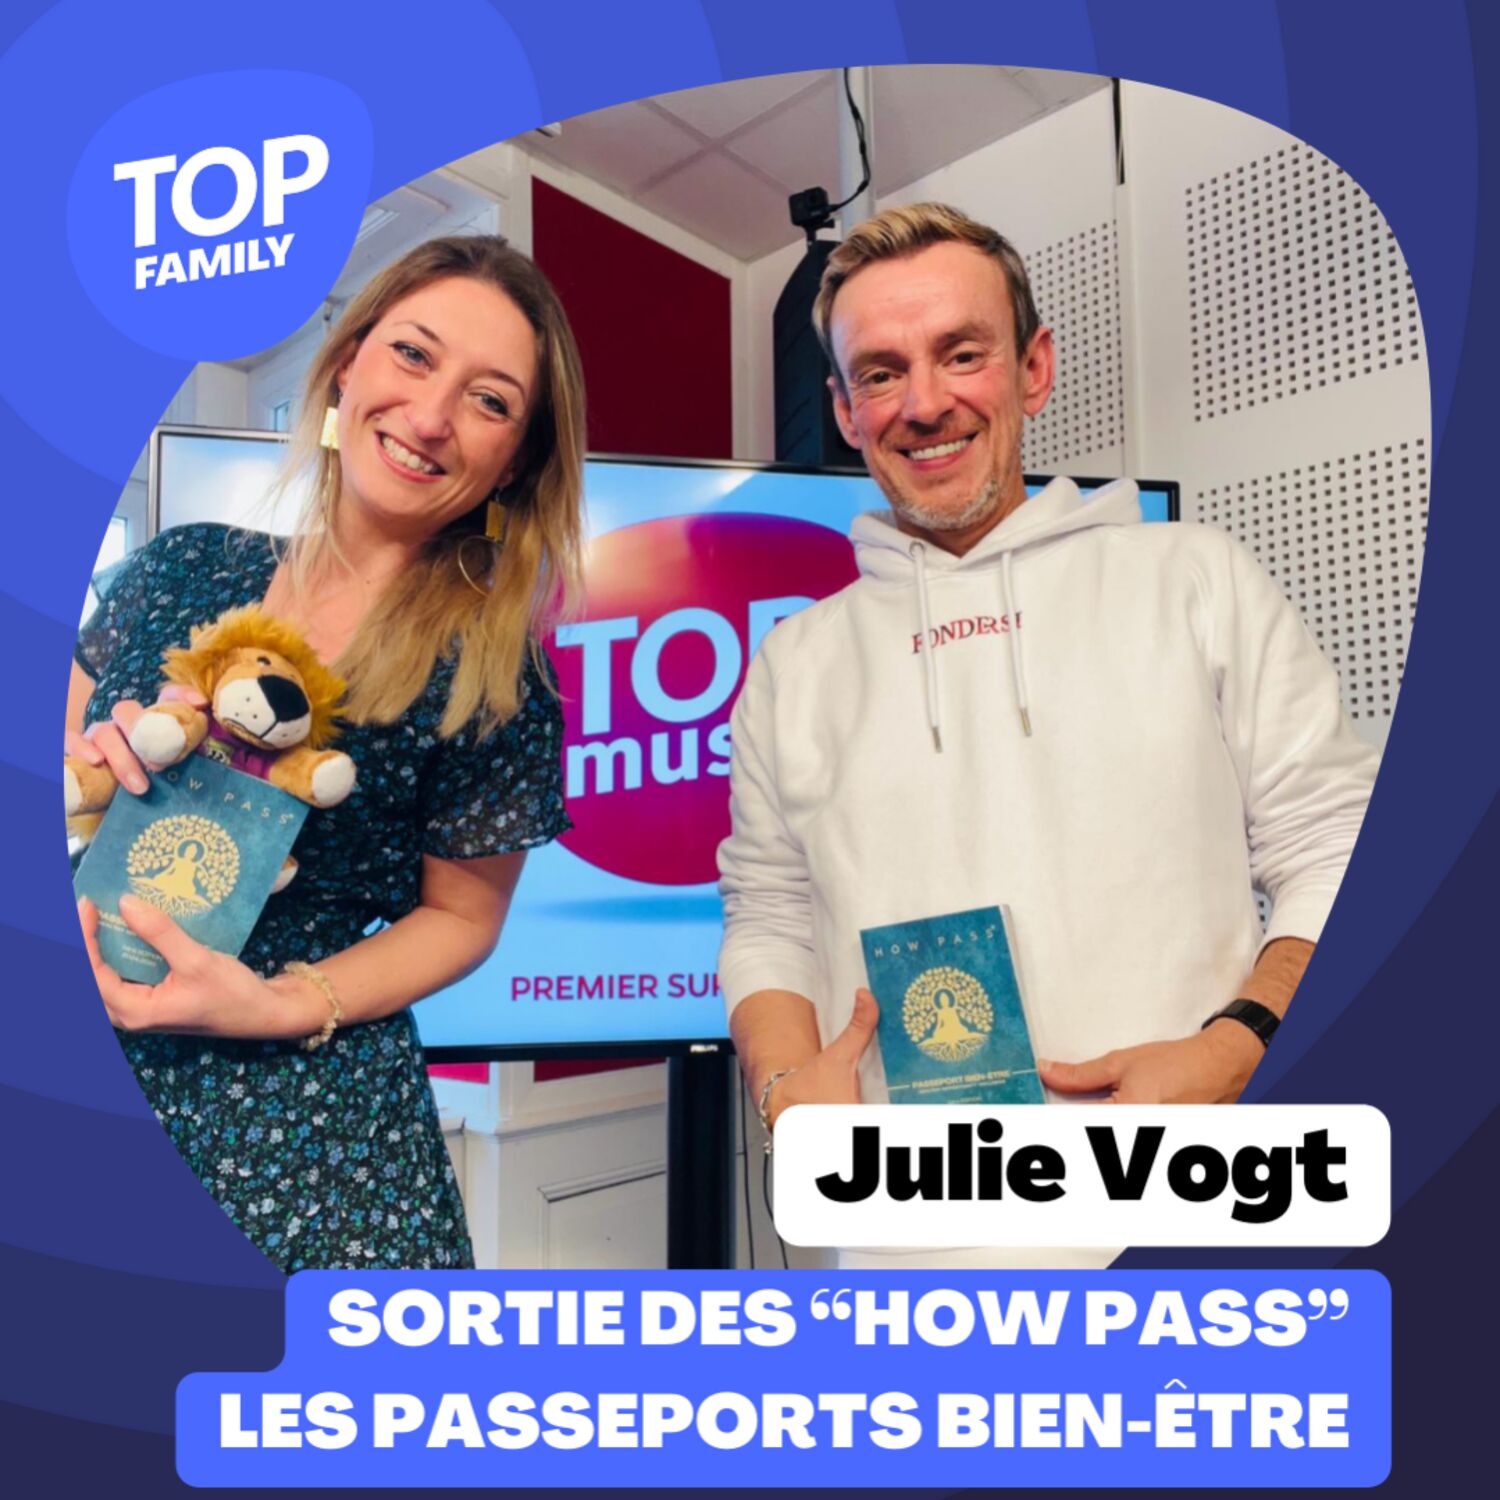 Julie Vogt sort les "How Pass", les passeports bien-être